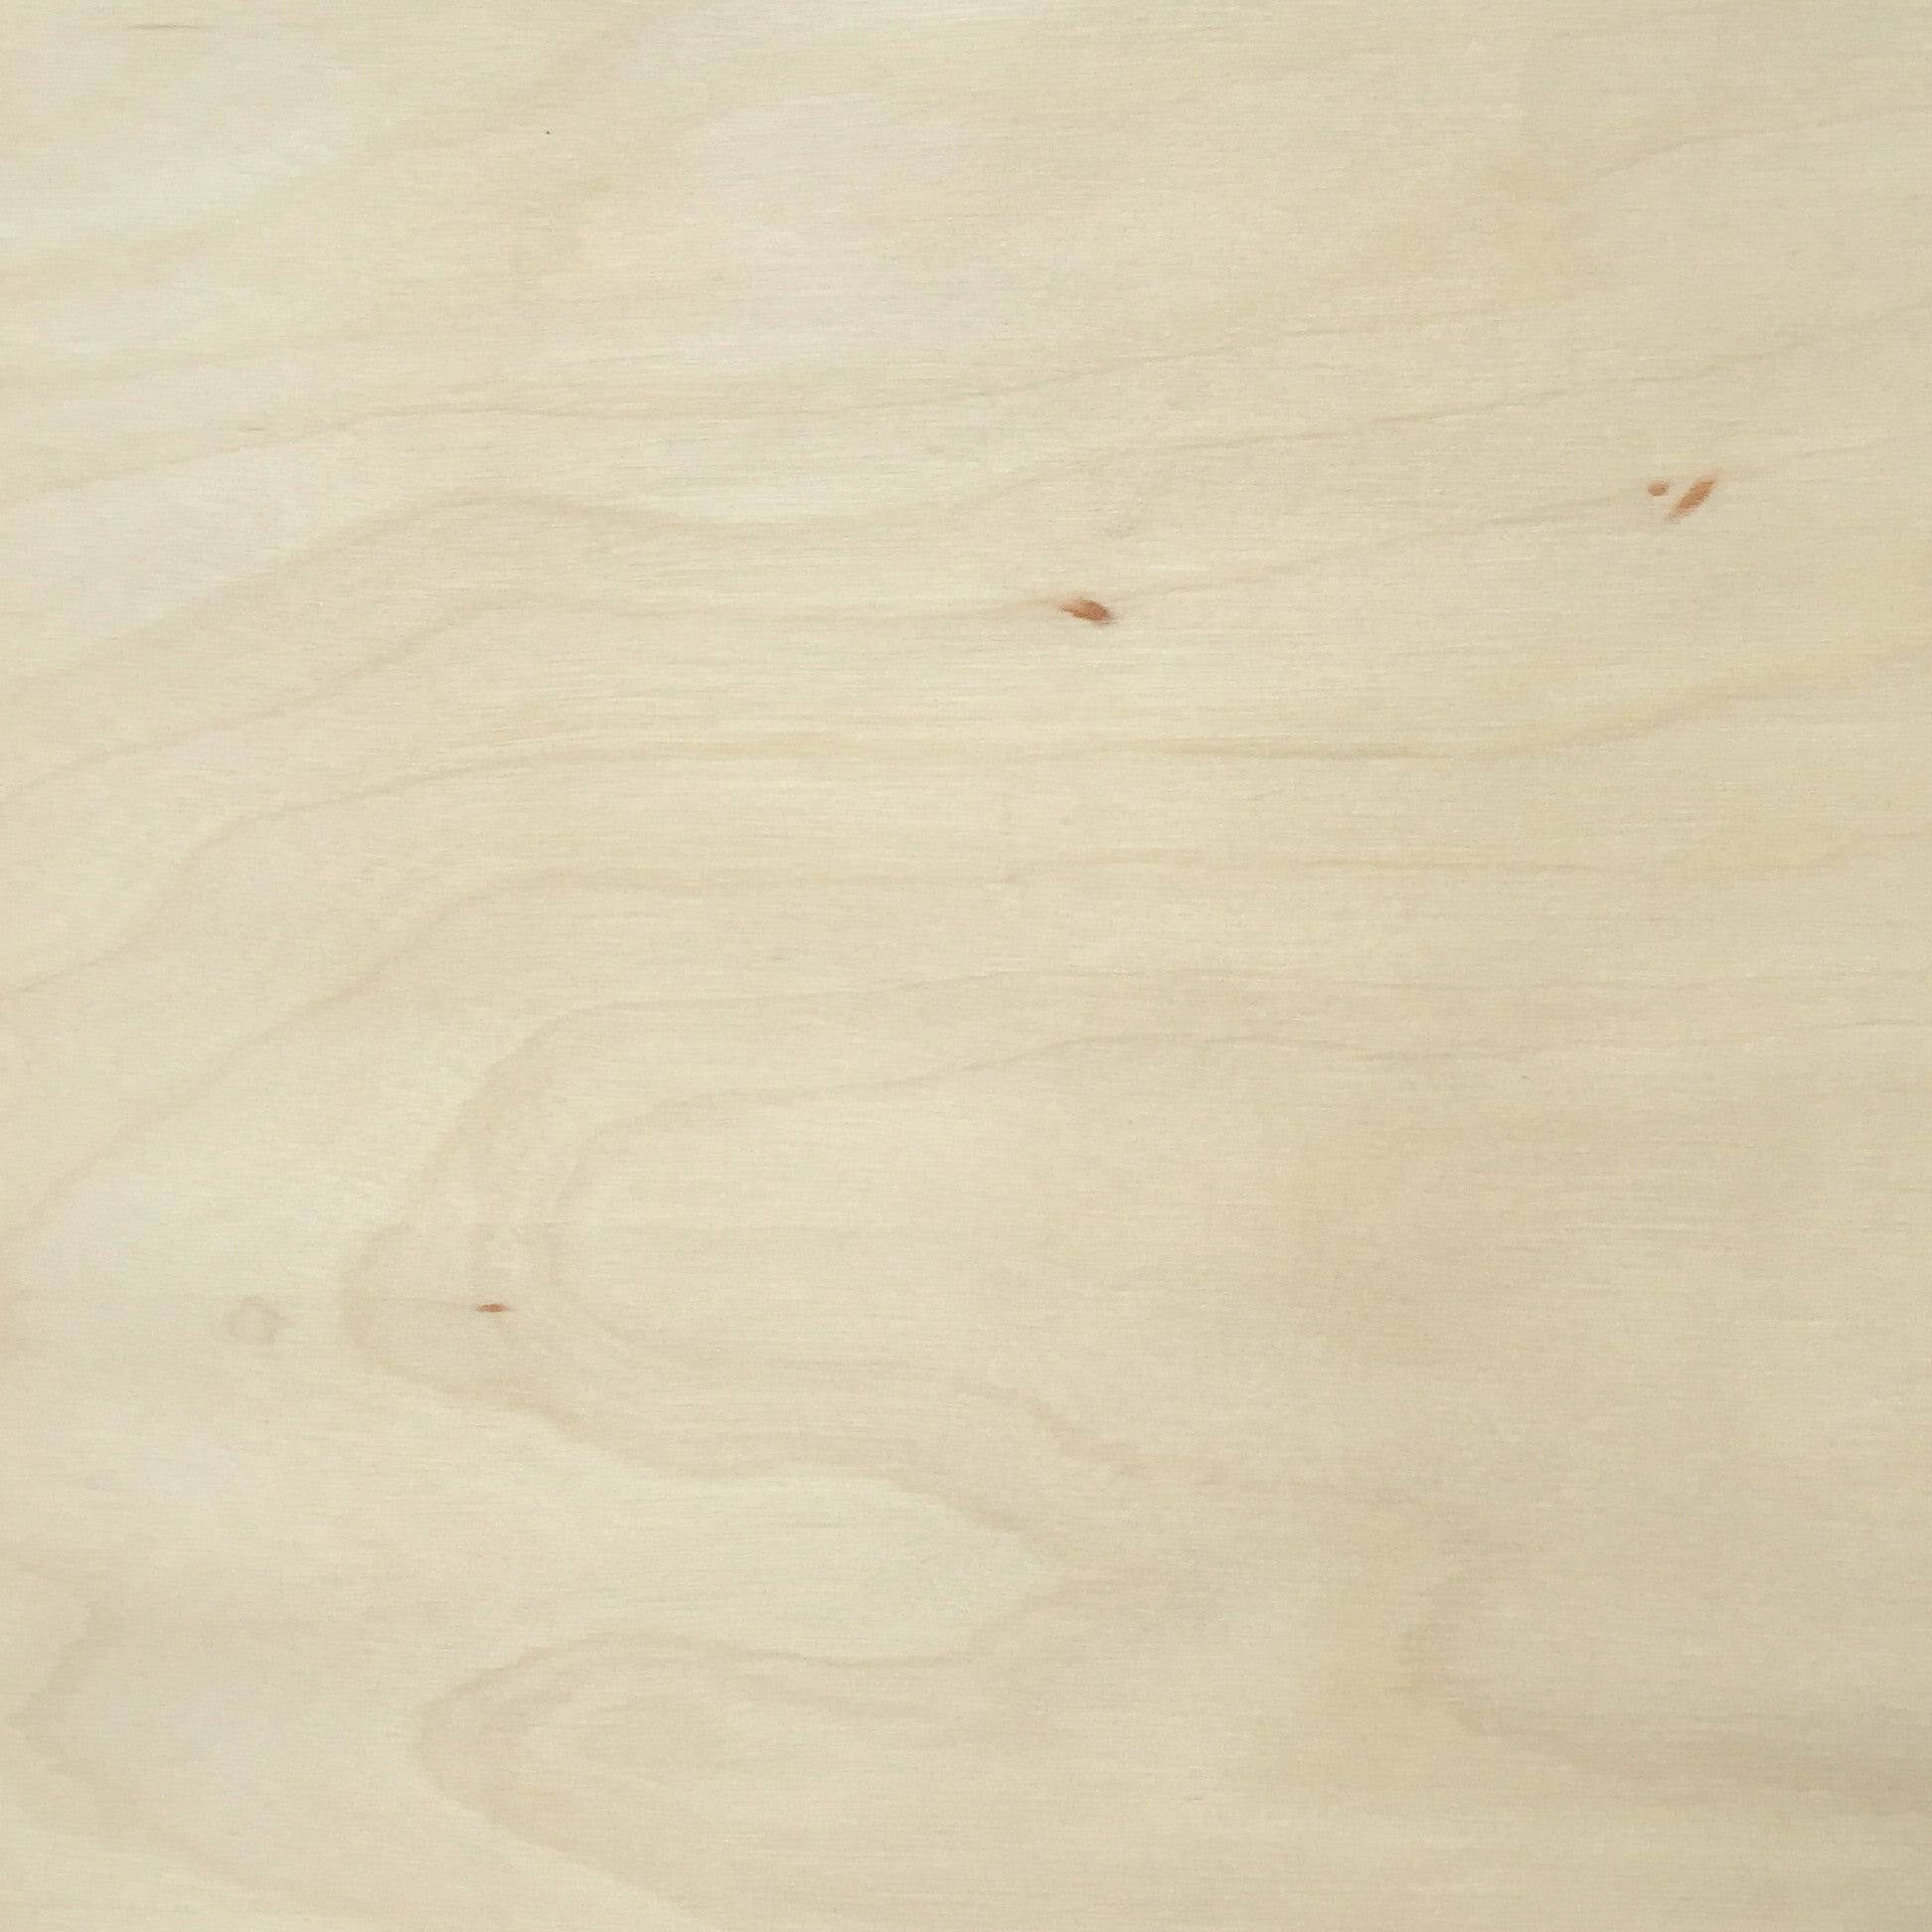 Wood Floor Textures Paper-table Paper-floor Paper-scrapbooking